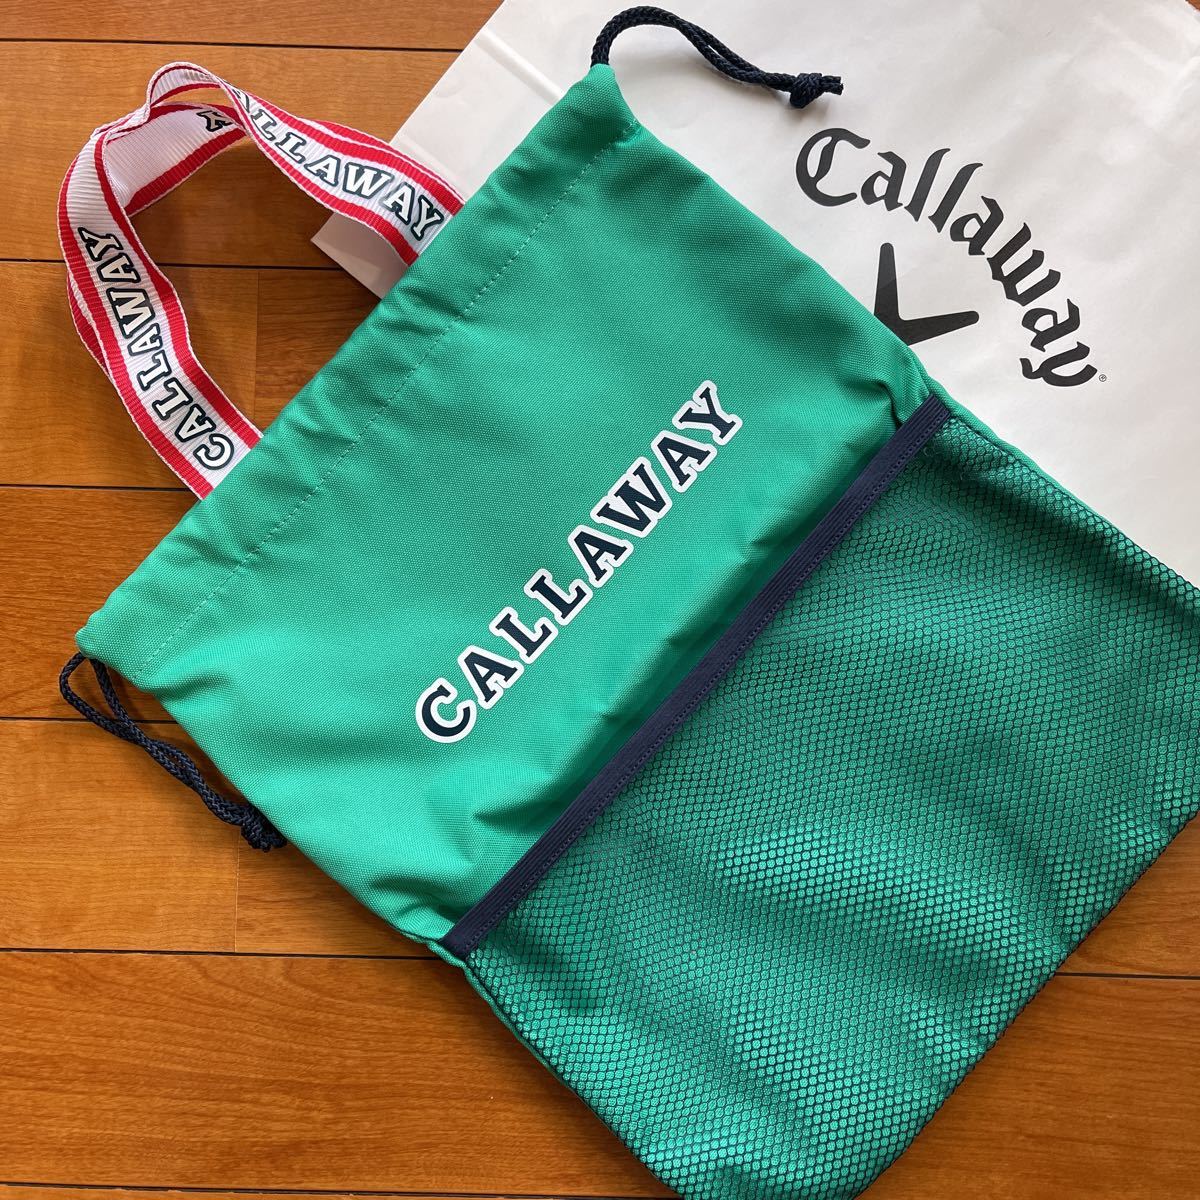  бесплатная доставка Callaway Callaway Golf новейший NEWLOGO сумка для обуви 2 -слойный структура крепкий полосный Logo руль + draw код MESH карман P.Mint( выгодная покупка ) новый товар 